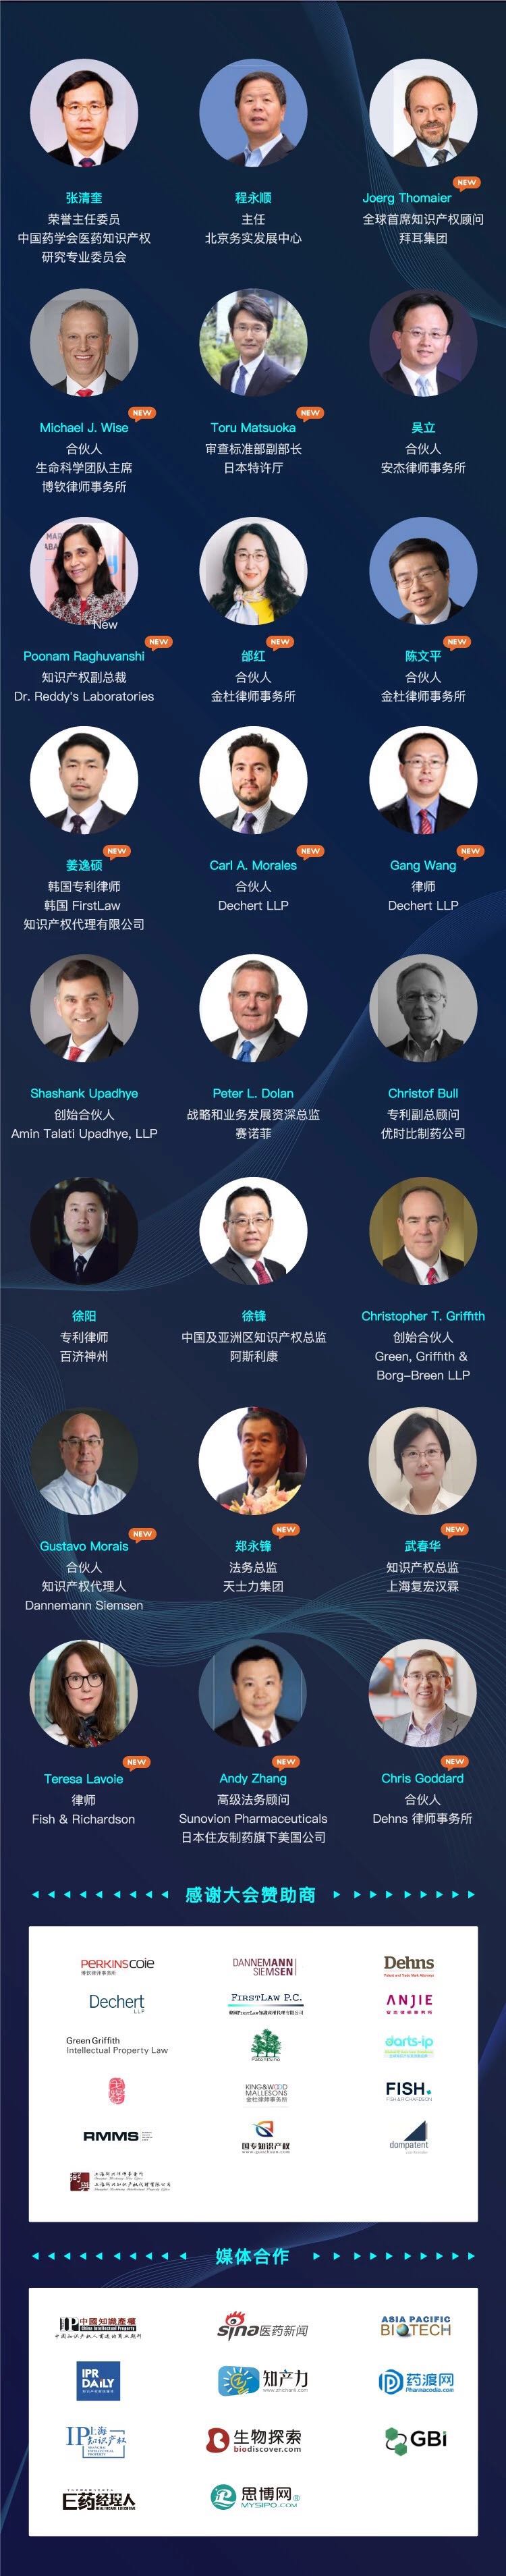 2019第四届中国医药知识产权峰会将在上海举办